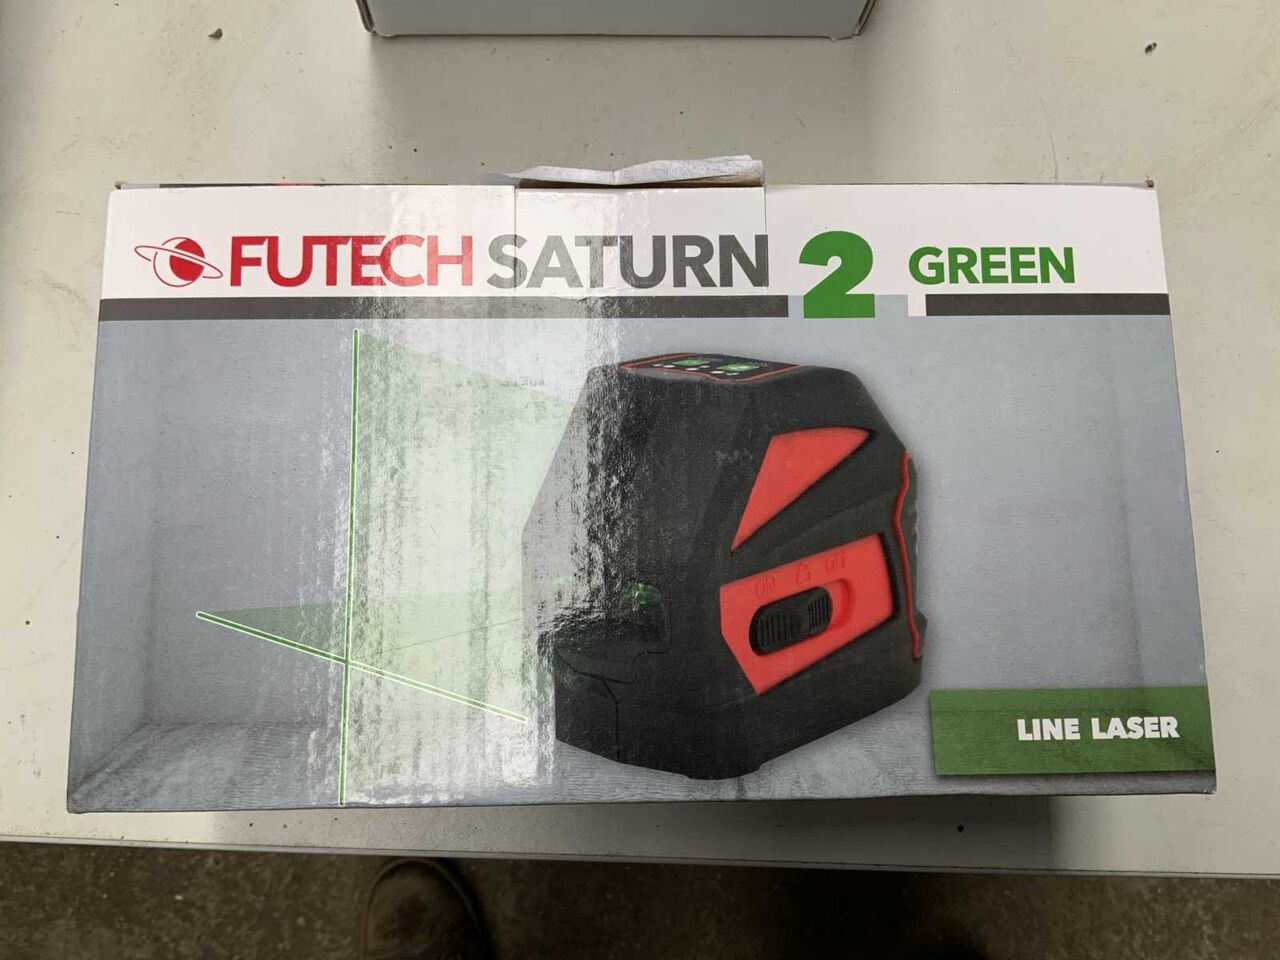 Futech Saturn 2 green merni alat